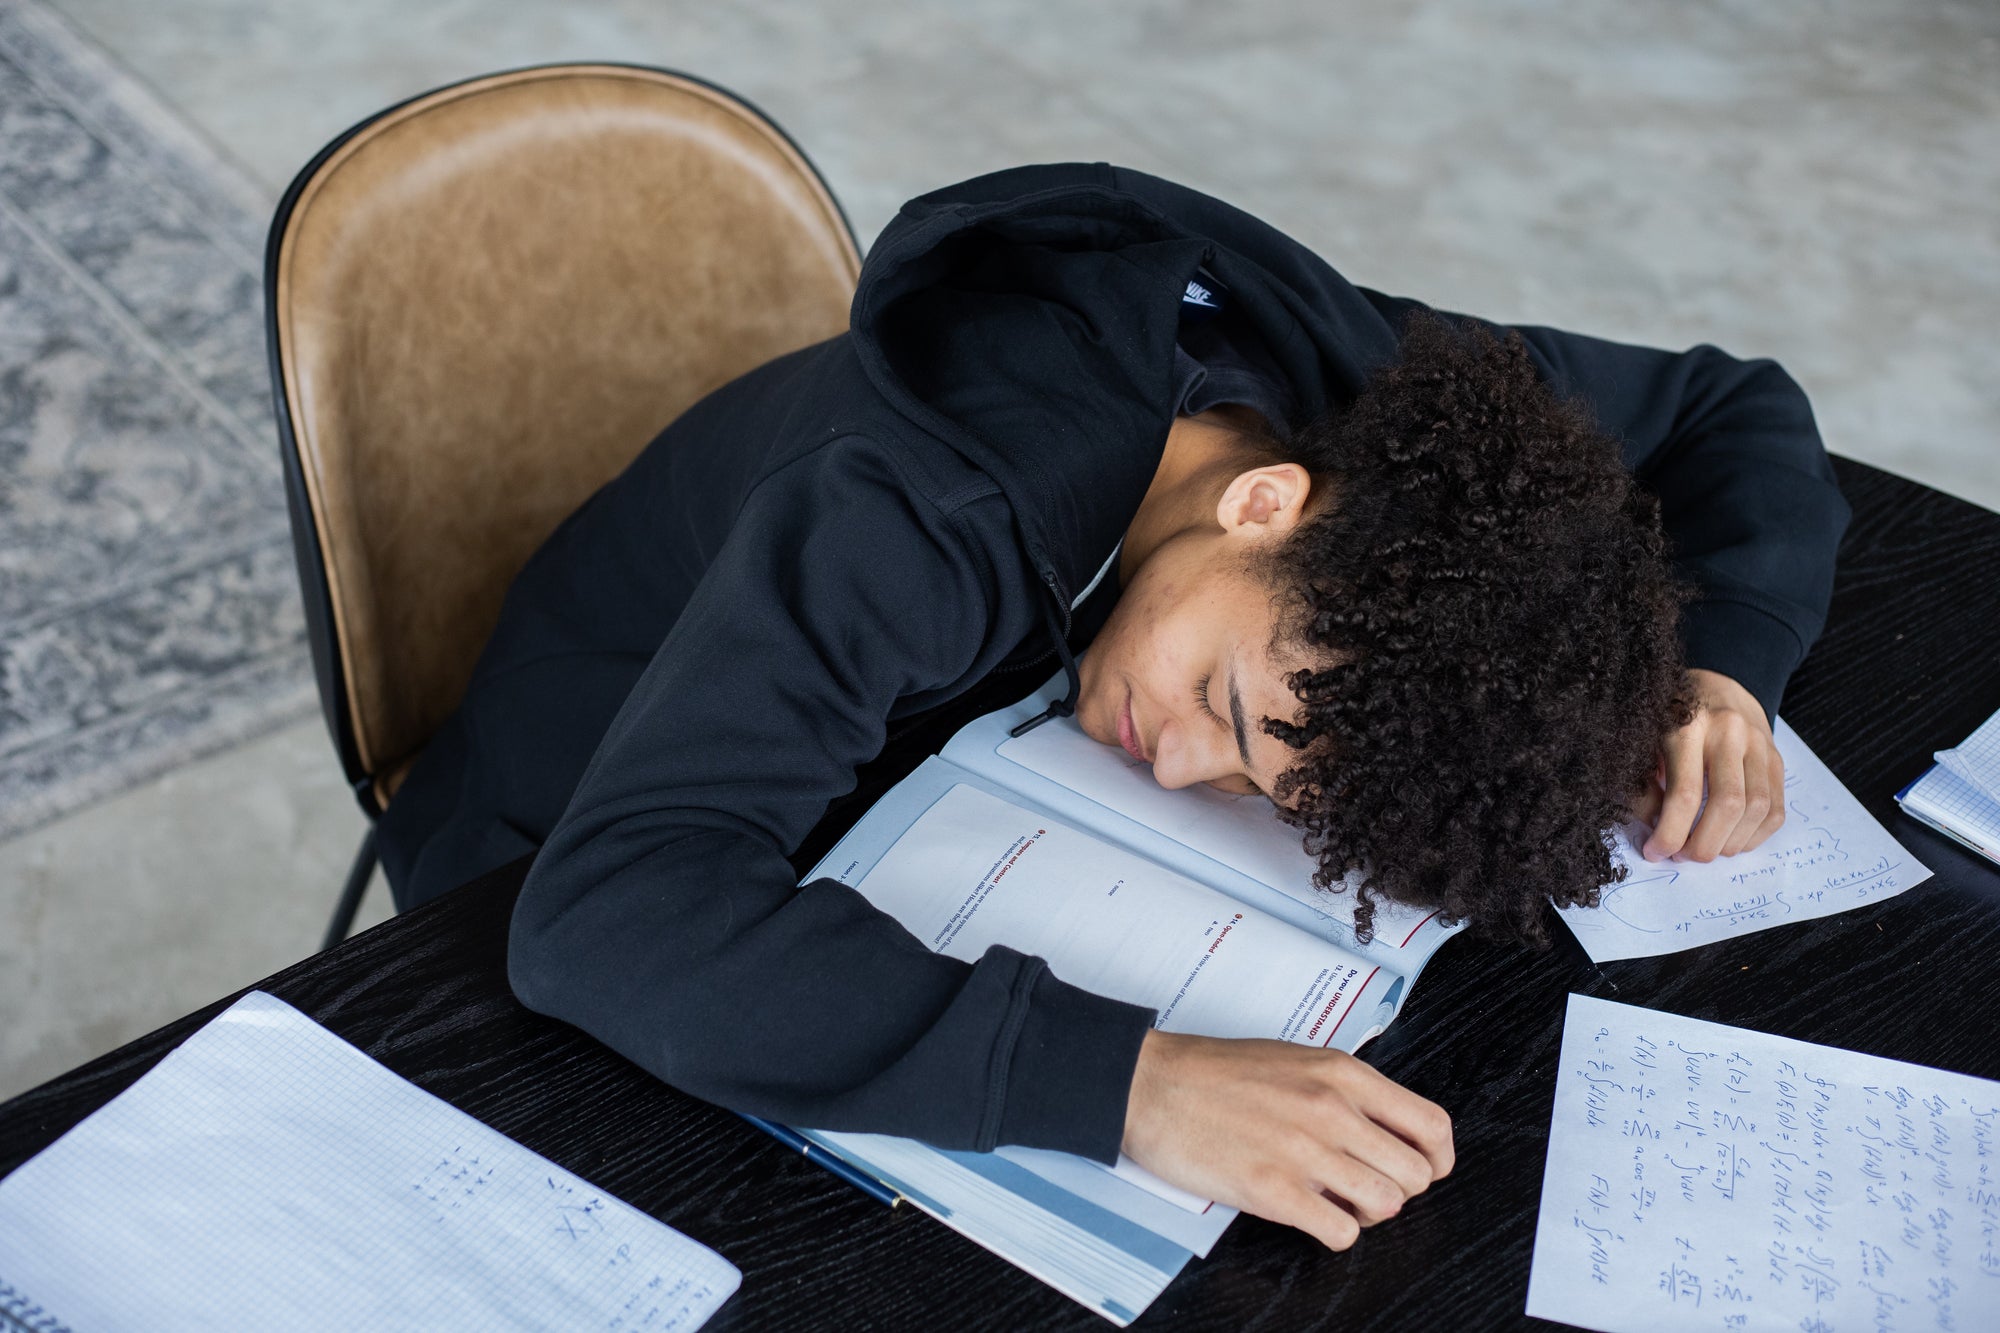 When Fatigue Hits: Top 5 Tips